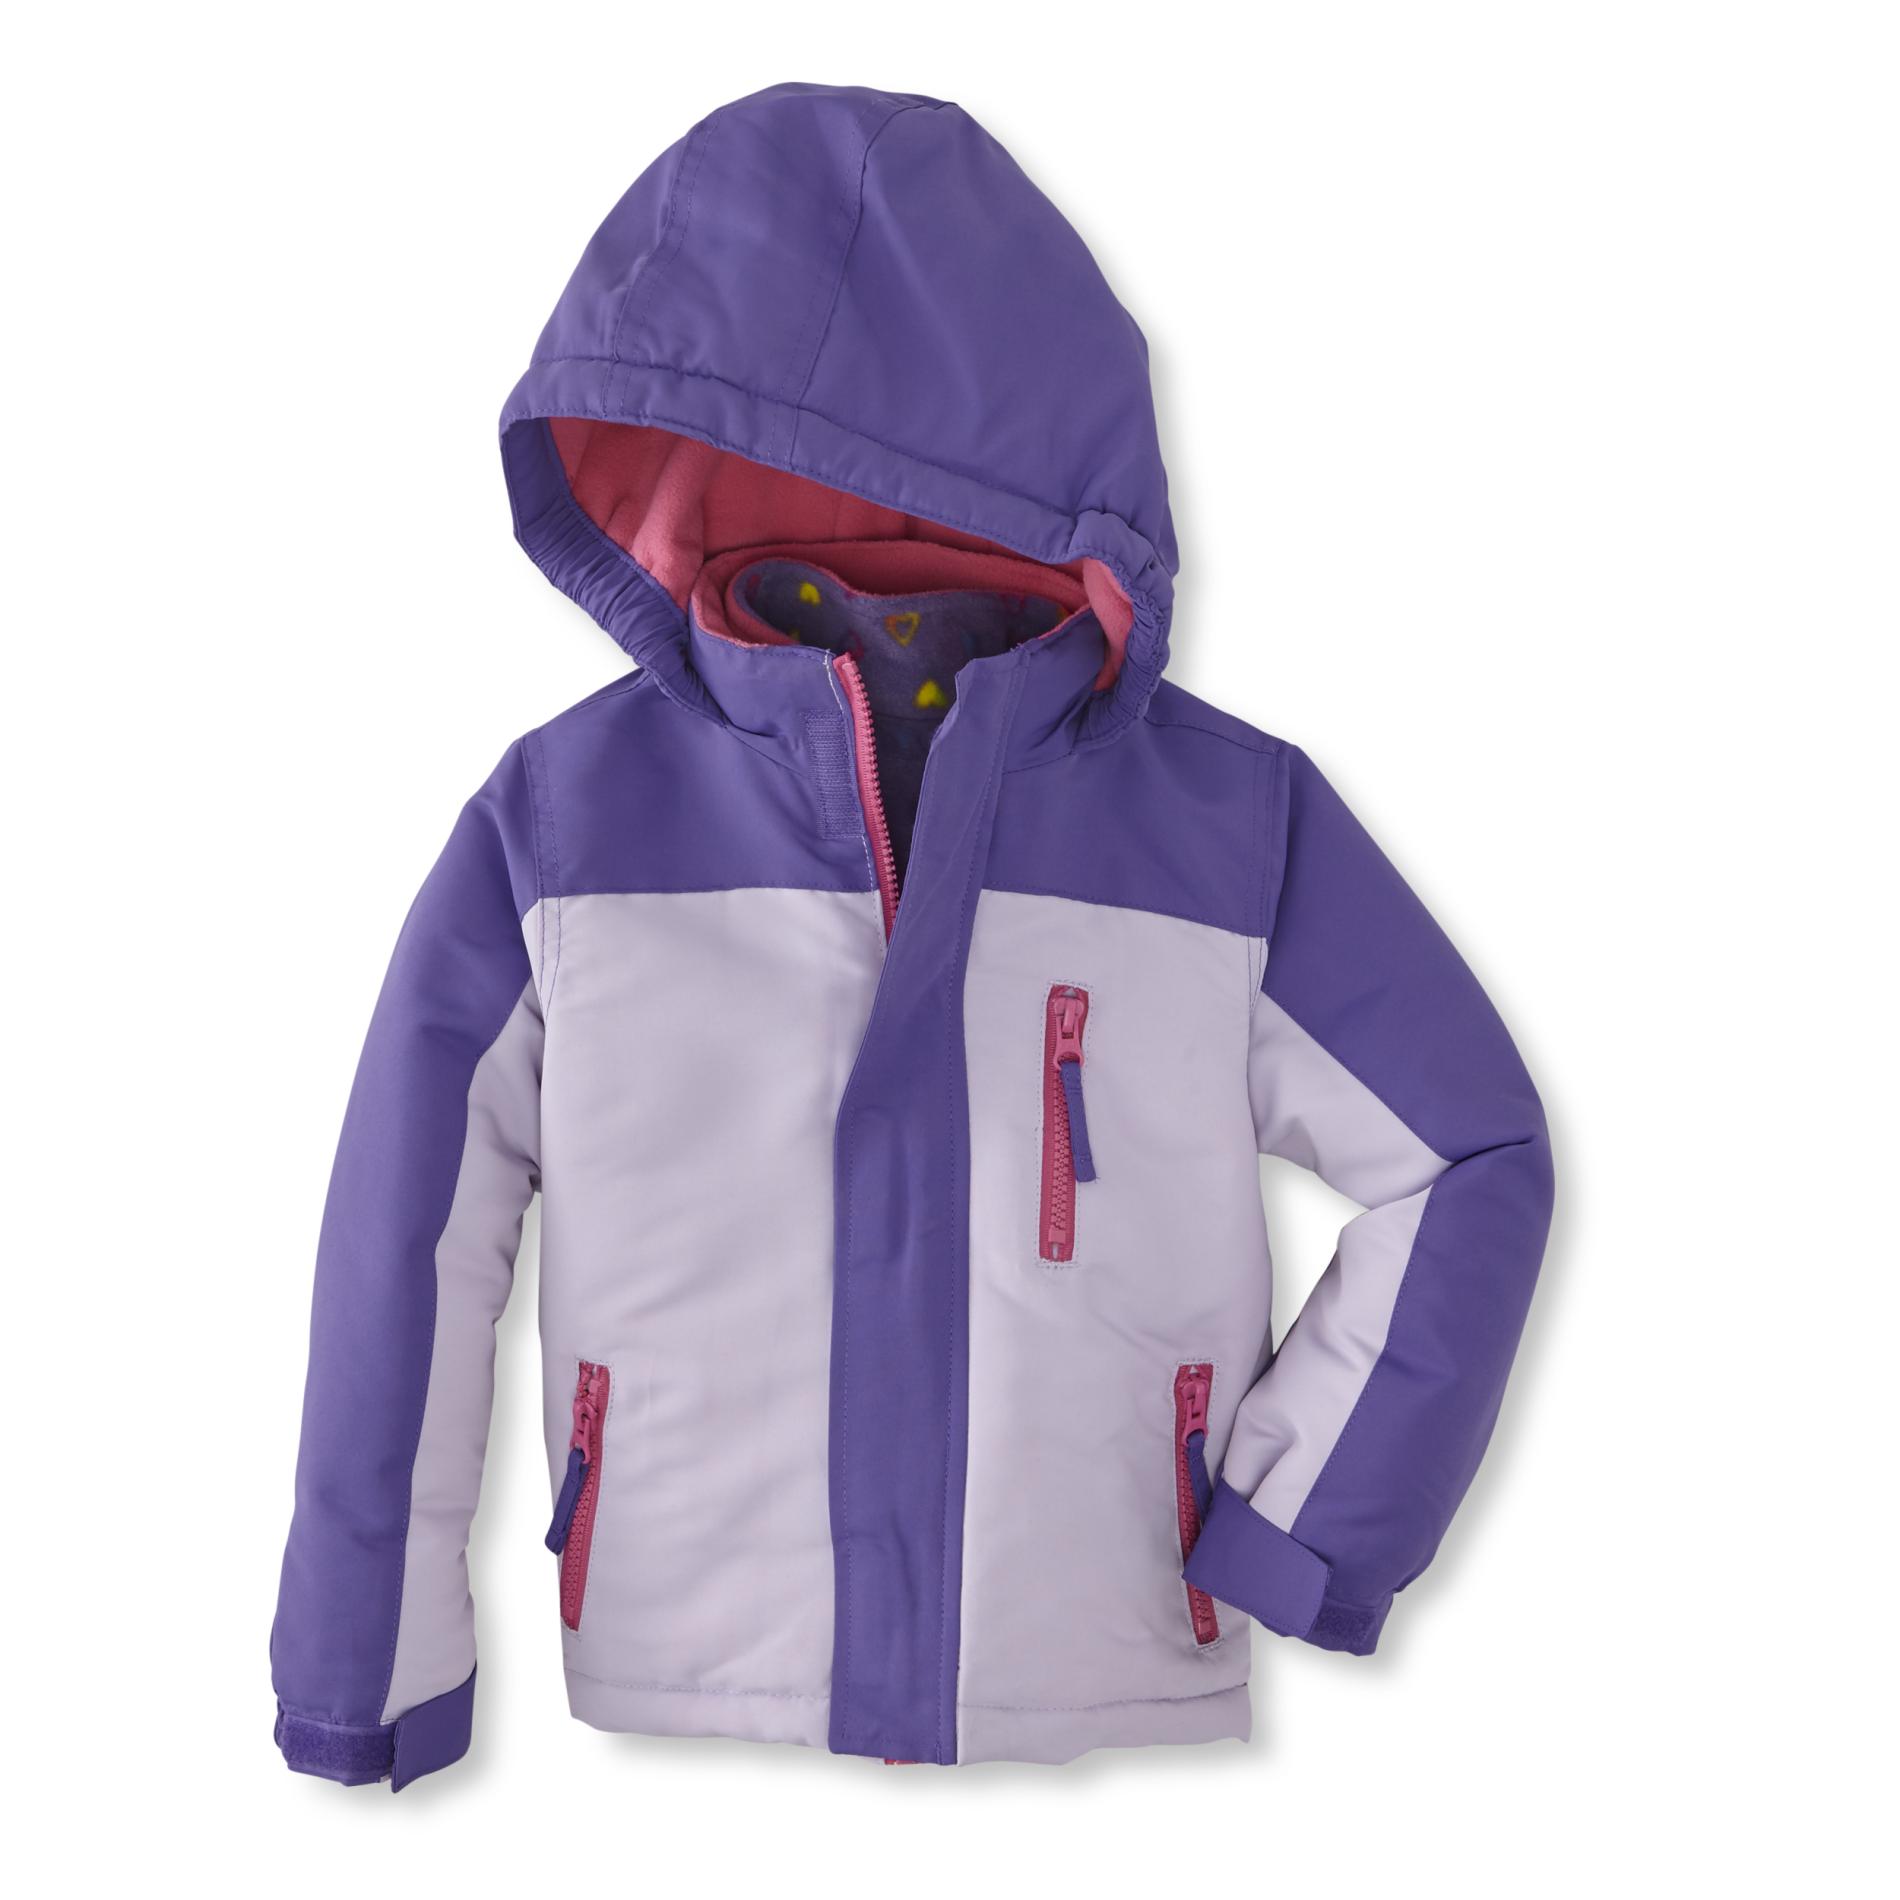 Athletech Infant & Toddler Girls' Winter Coat & Removable Liner Jacket - Hearts